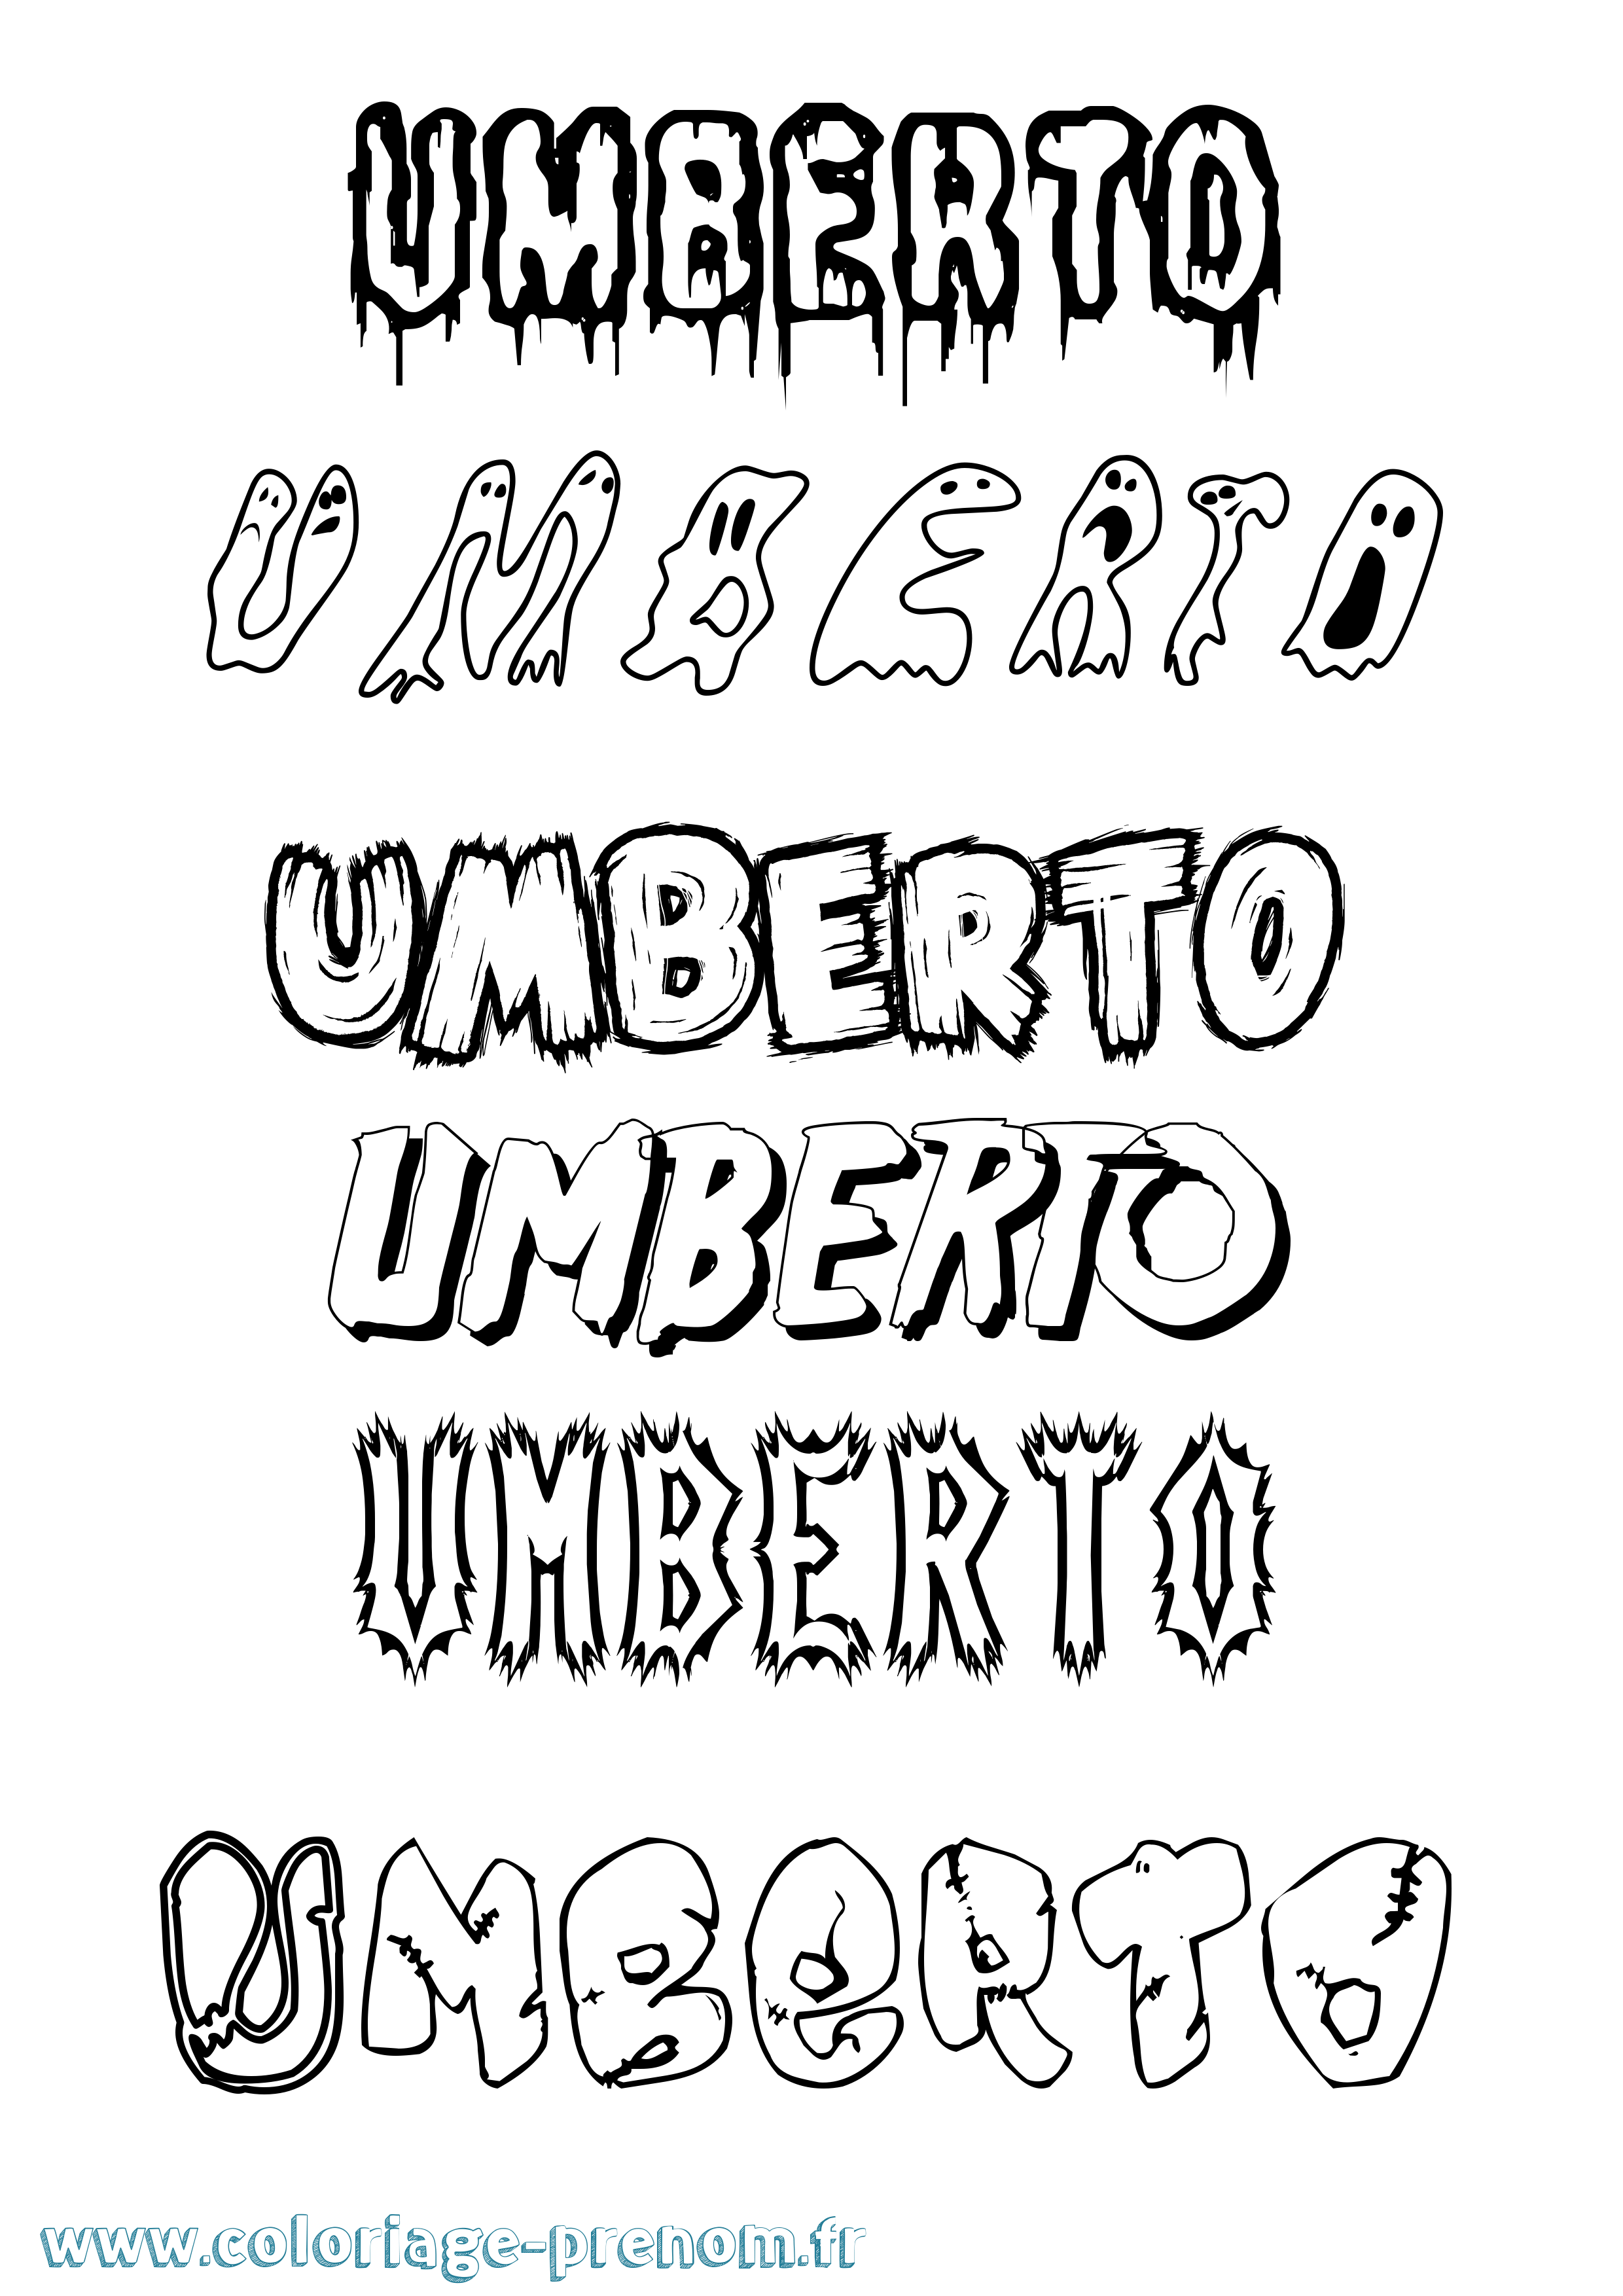 Coloriage prénom Umberto Frisson